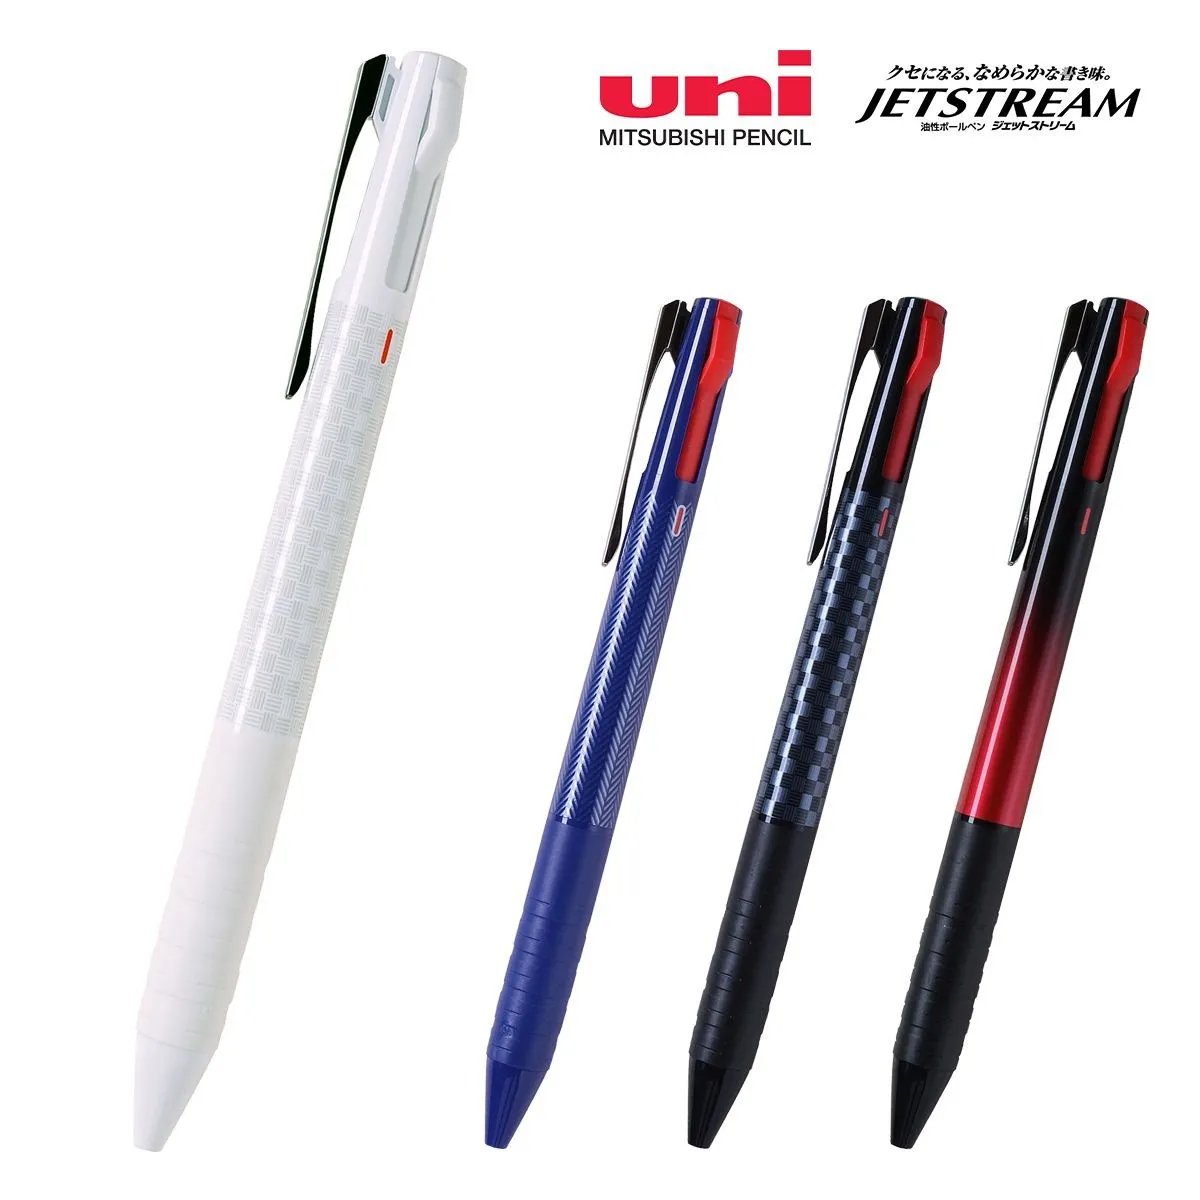 三菱鉛筆 ジェットストリーム スリムコンパクト 3色ボールペン 0.5mm【名入れボールペン / パッド印刷】 画像1